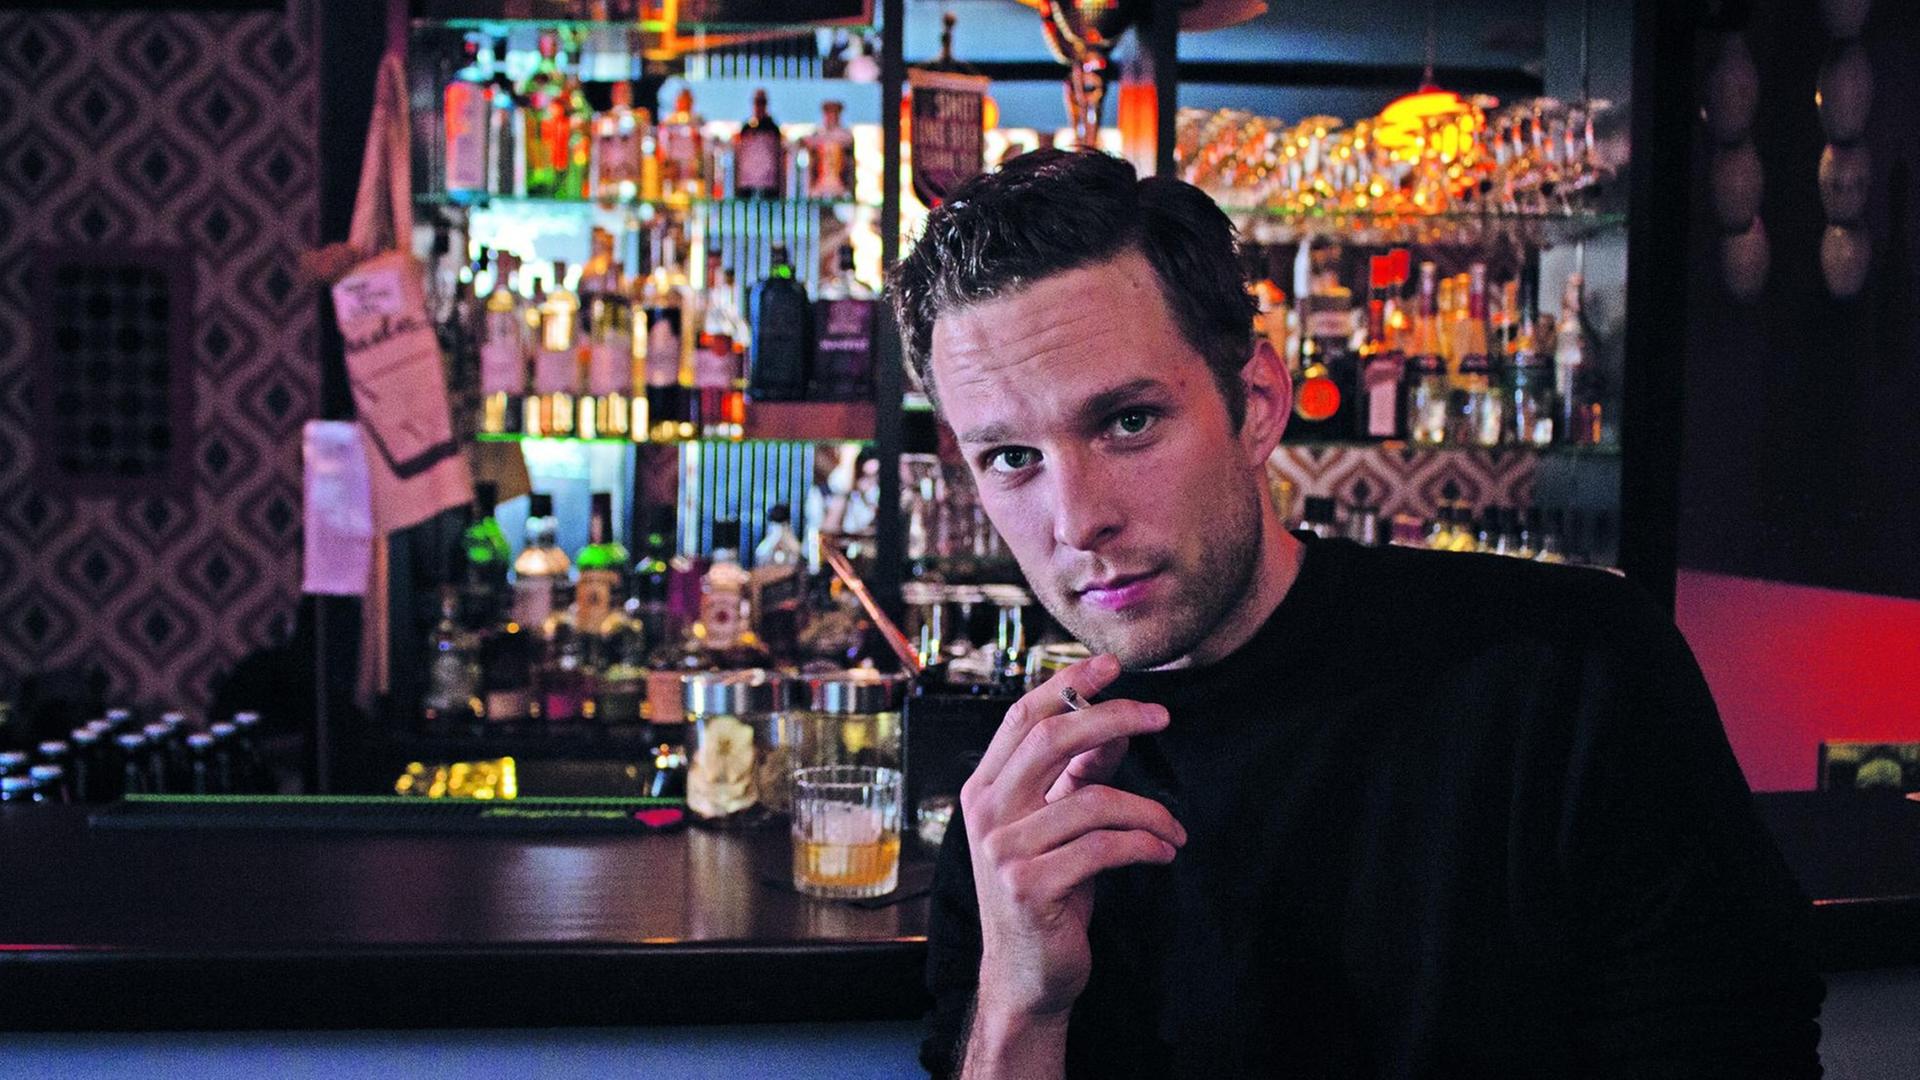 Die Szene aus dem Stück "Sieben Nächte" zeigt einen rauchenden Mann an einer Bar.